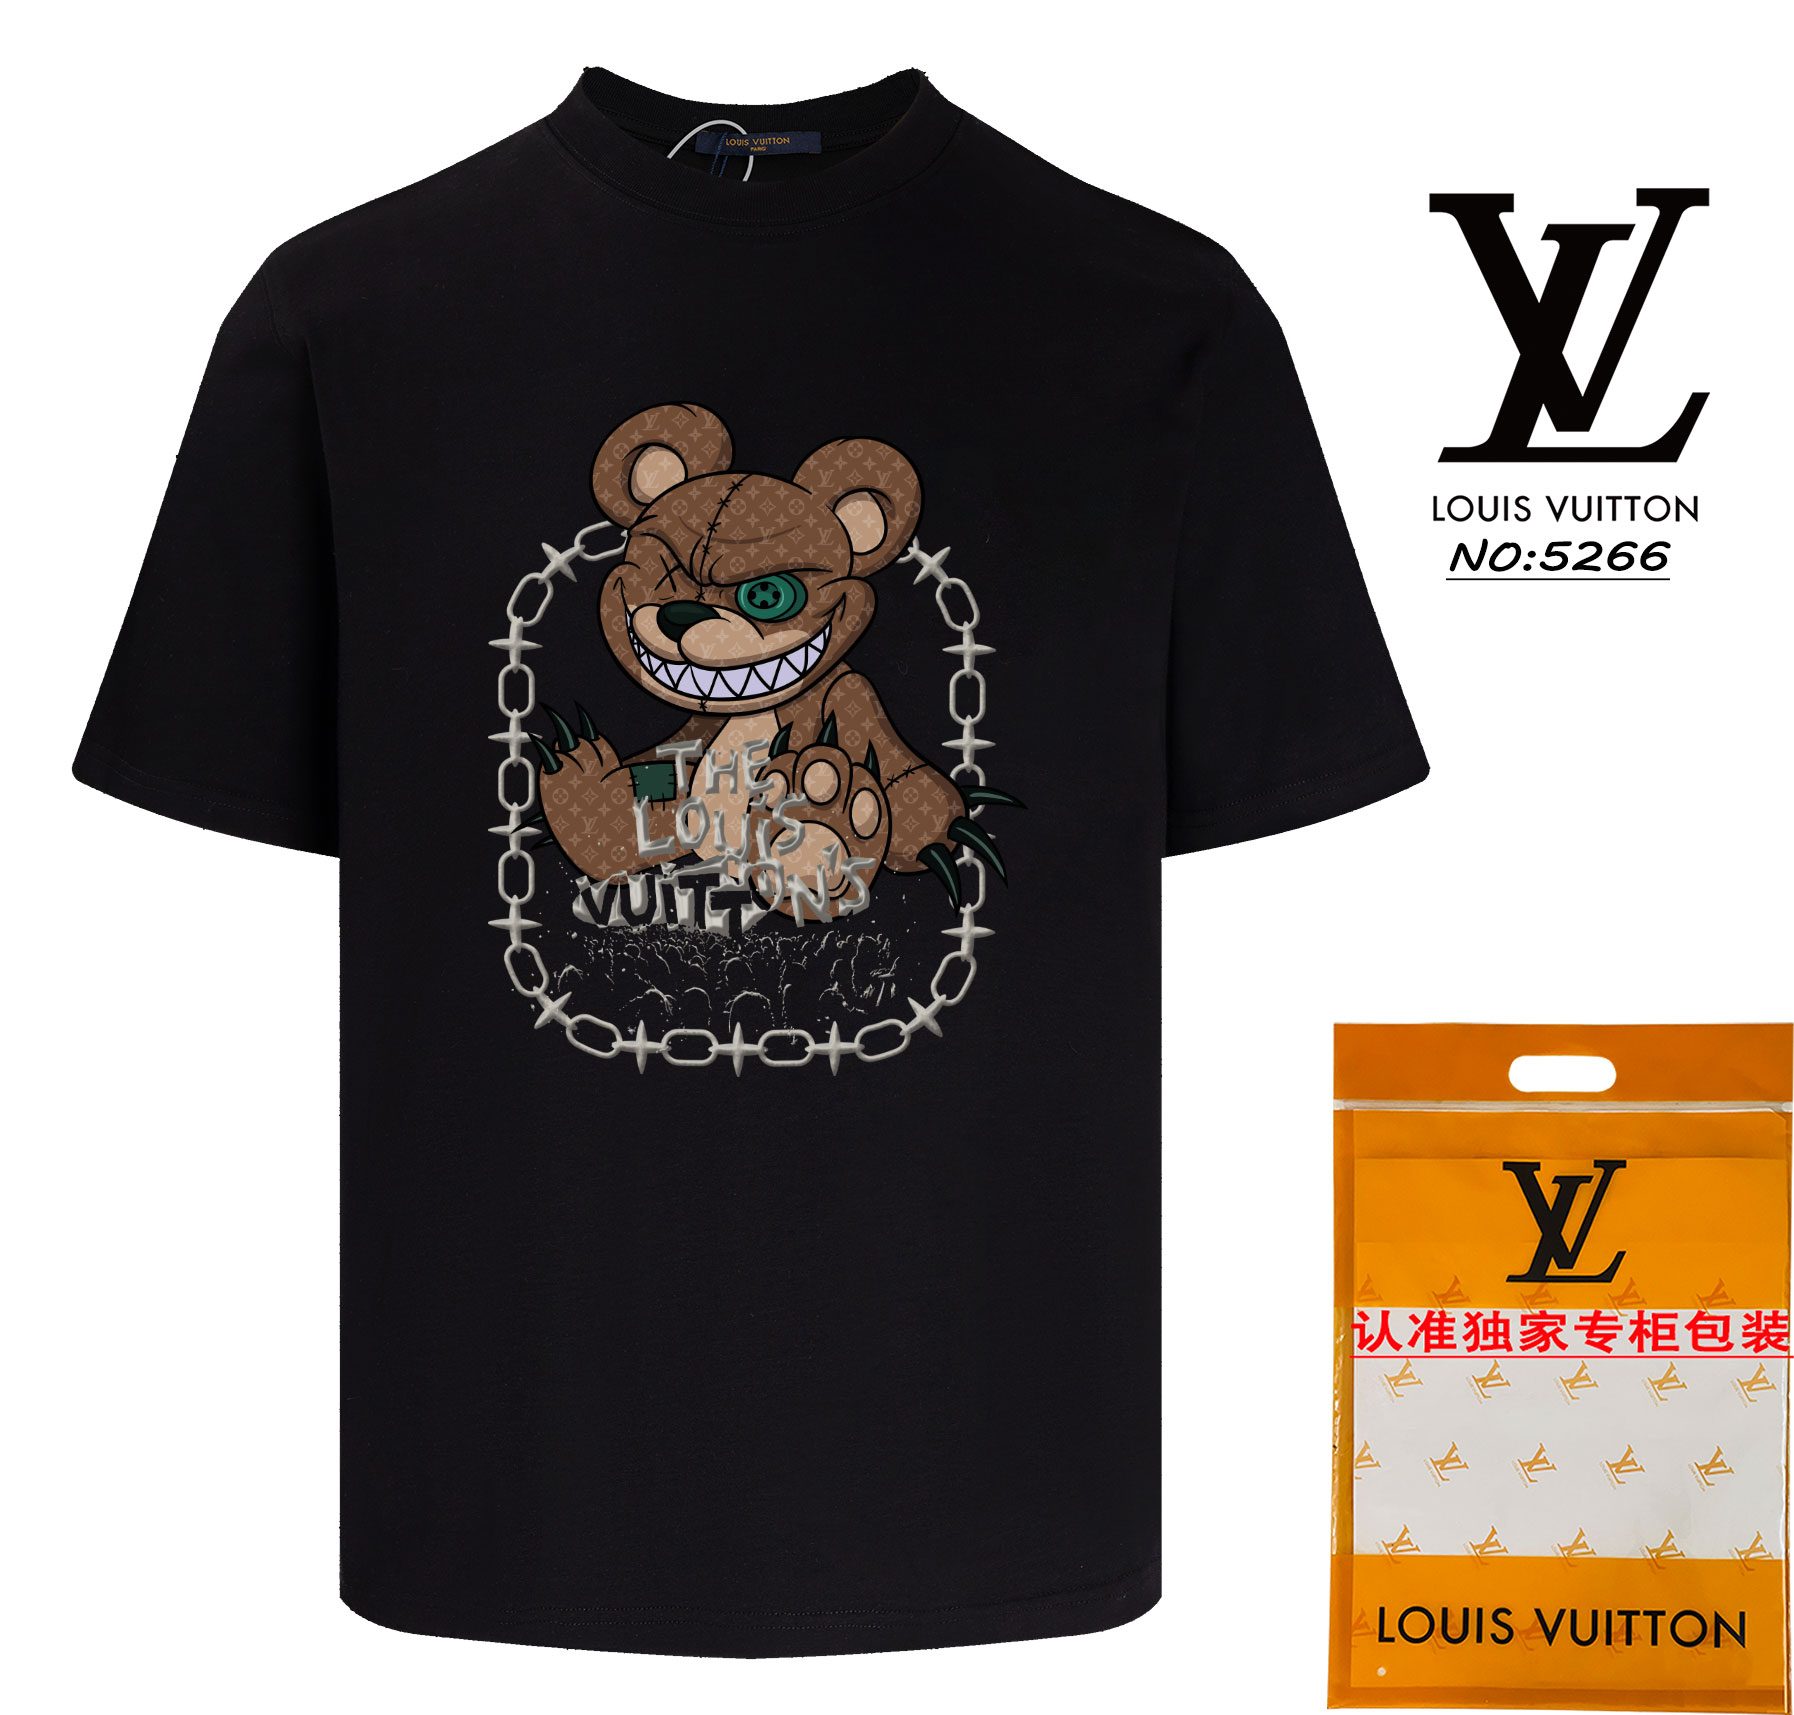 Louis Vuitton Clothing T-Shirt Designer Wholesale Replica
 Apricot Color Black White Unisex Short Sleeve